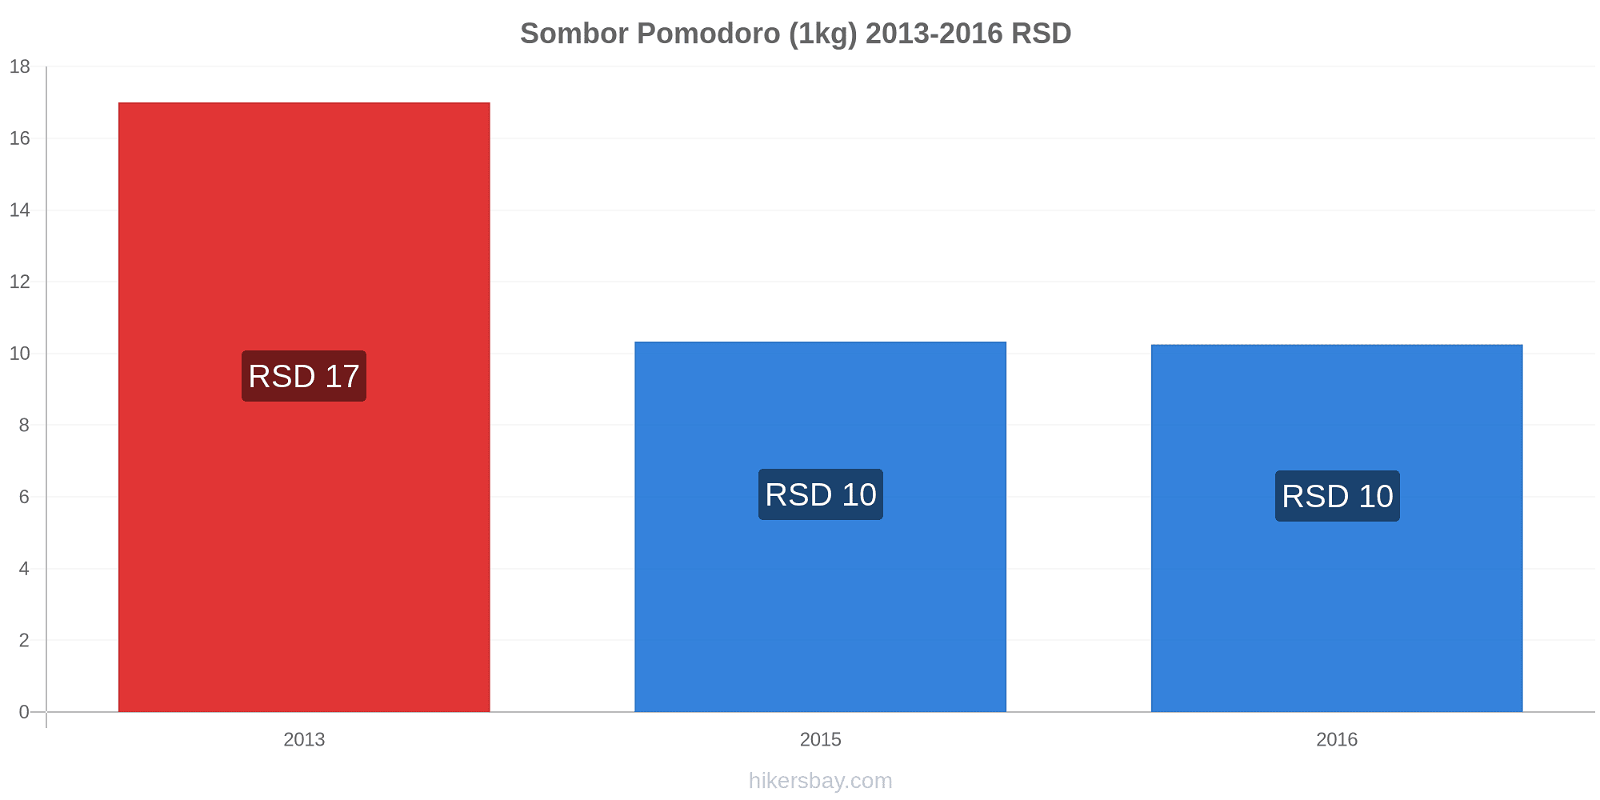 Sombor variazioni di prezzo Pomodoro (1kg) hikersbay.com